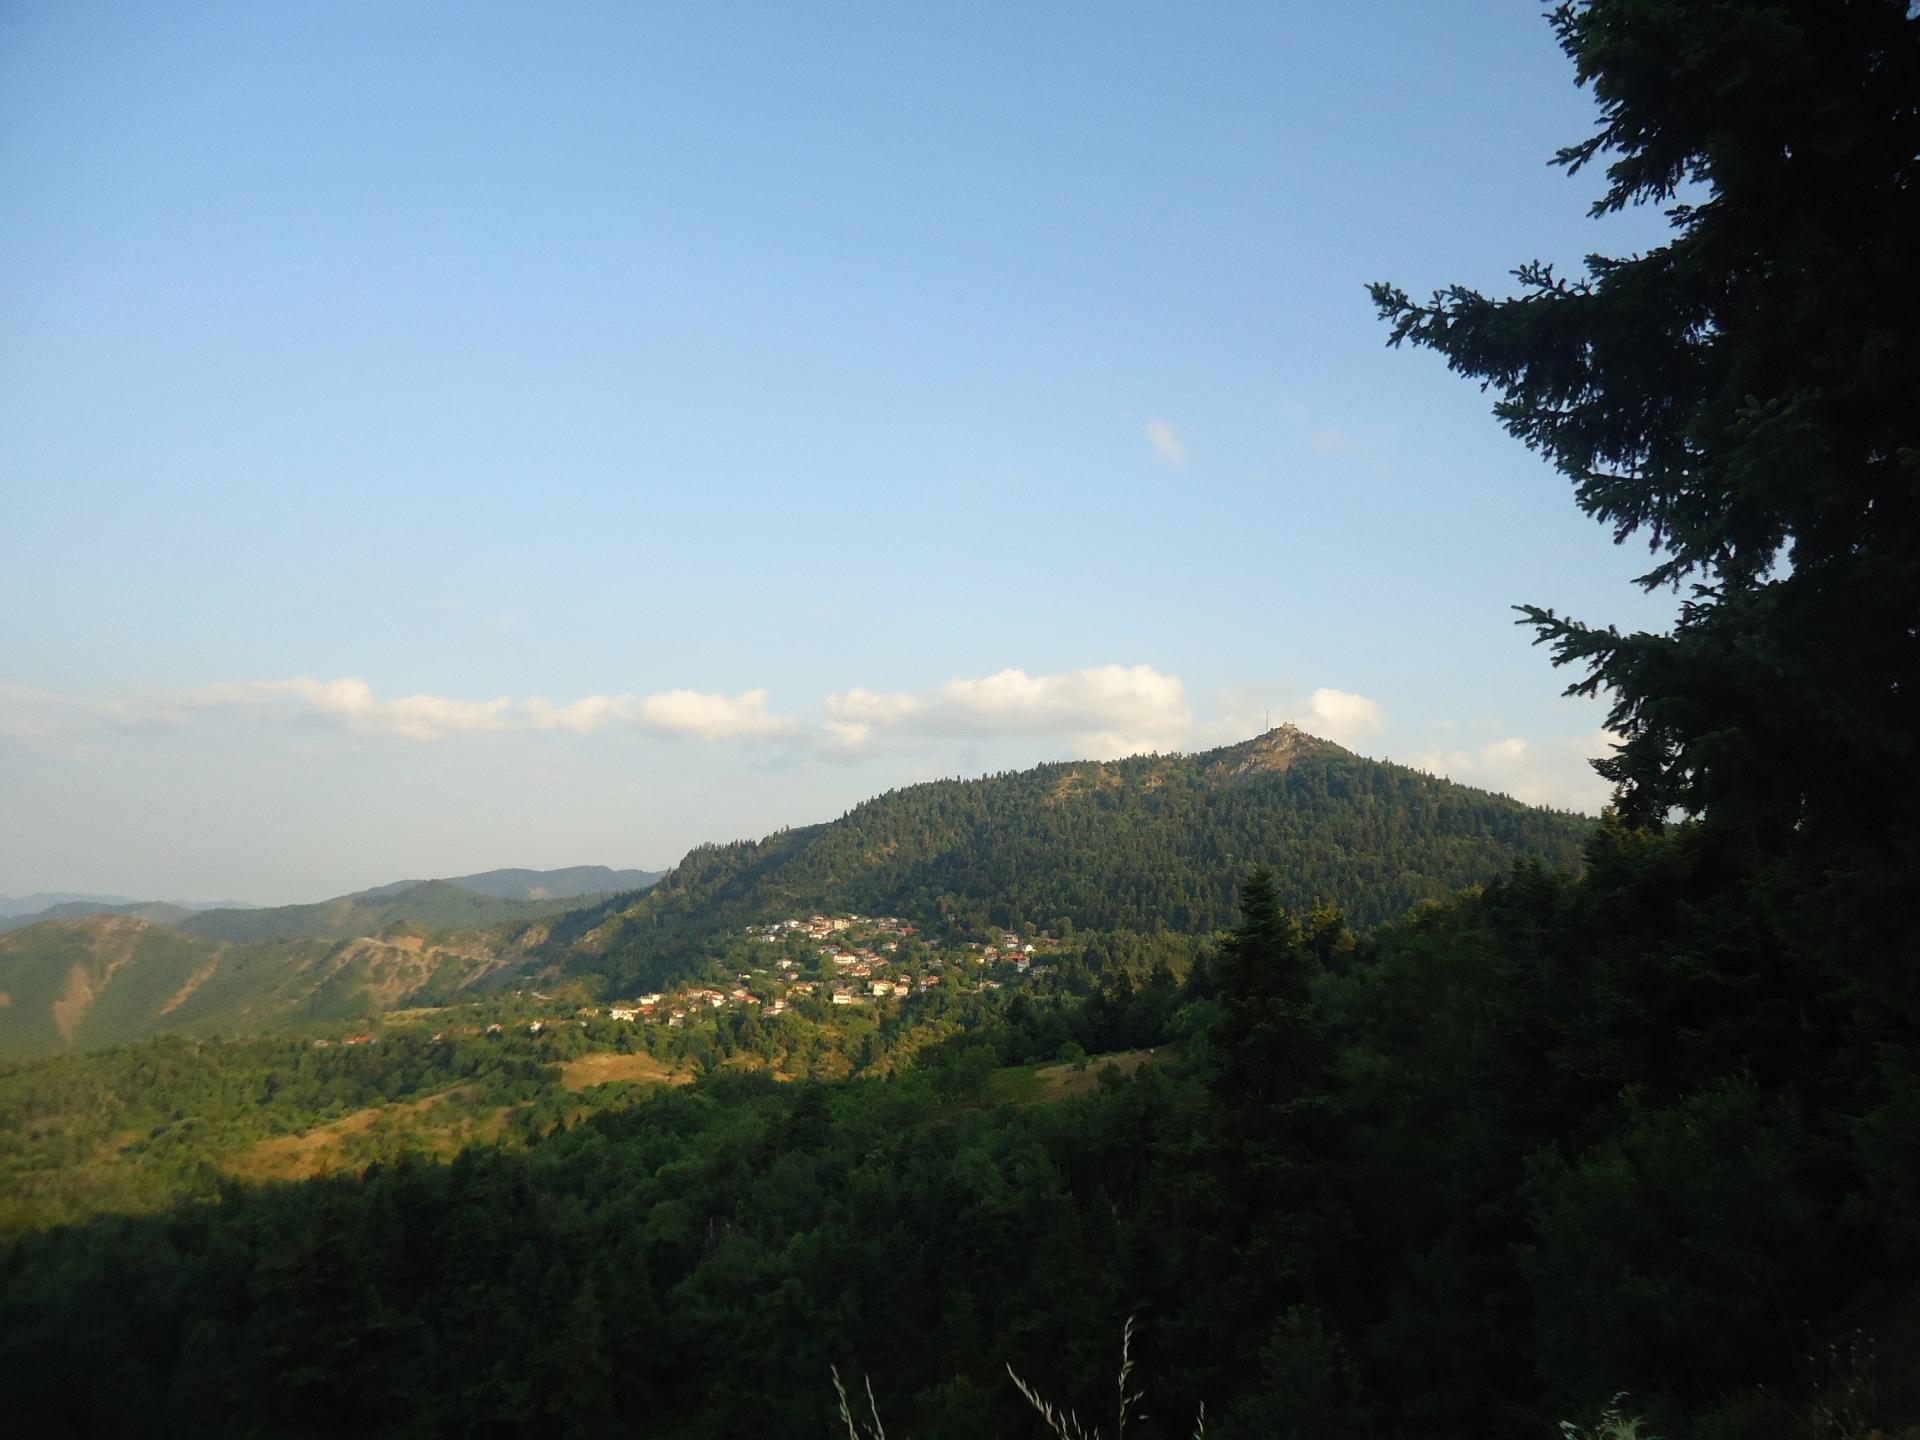 Τα Βουνά των Αγράφων στην Καστανιά - Καρδίτσας